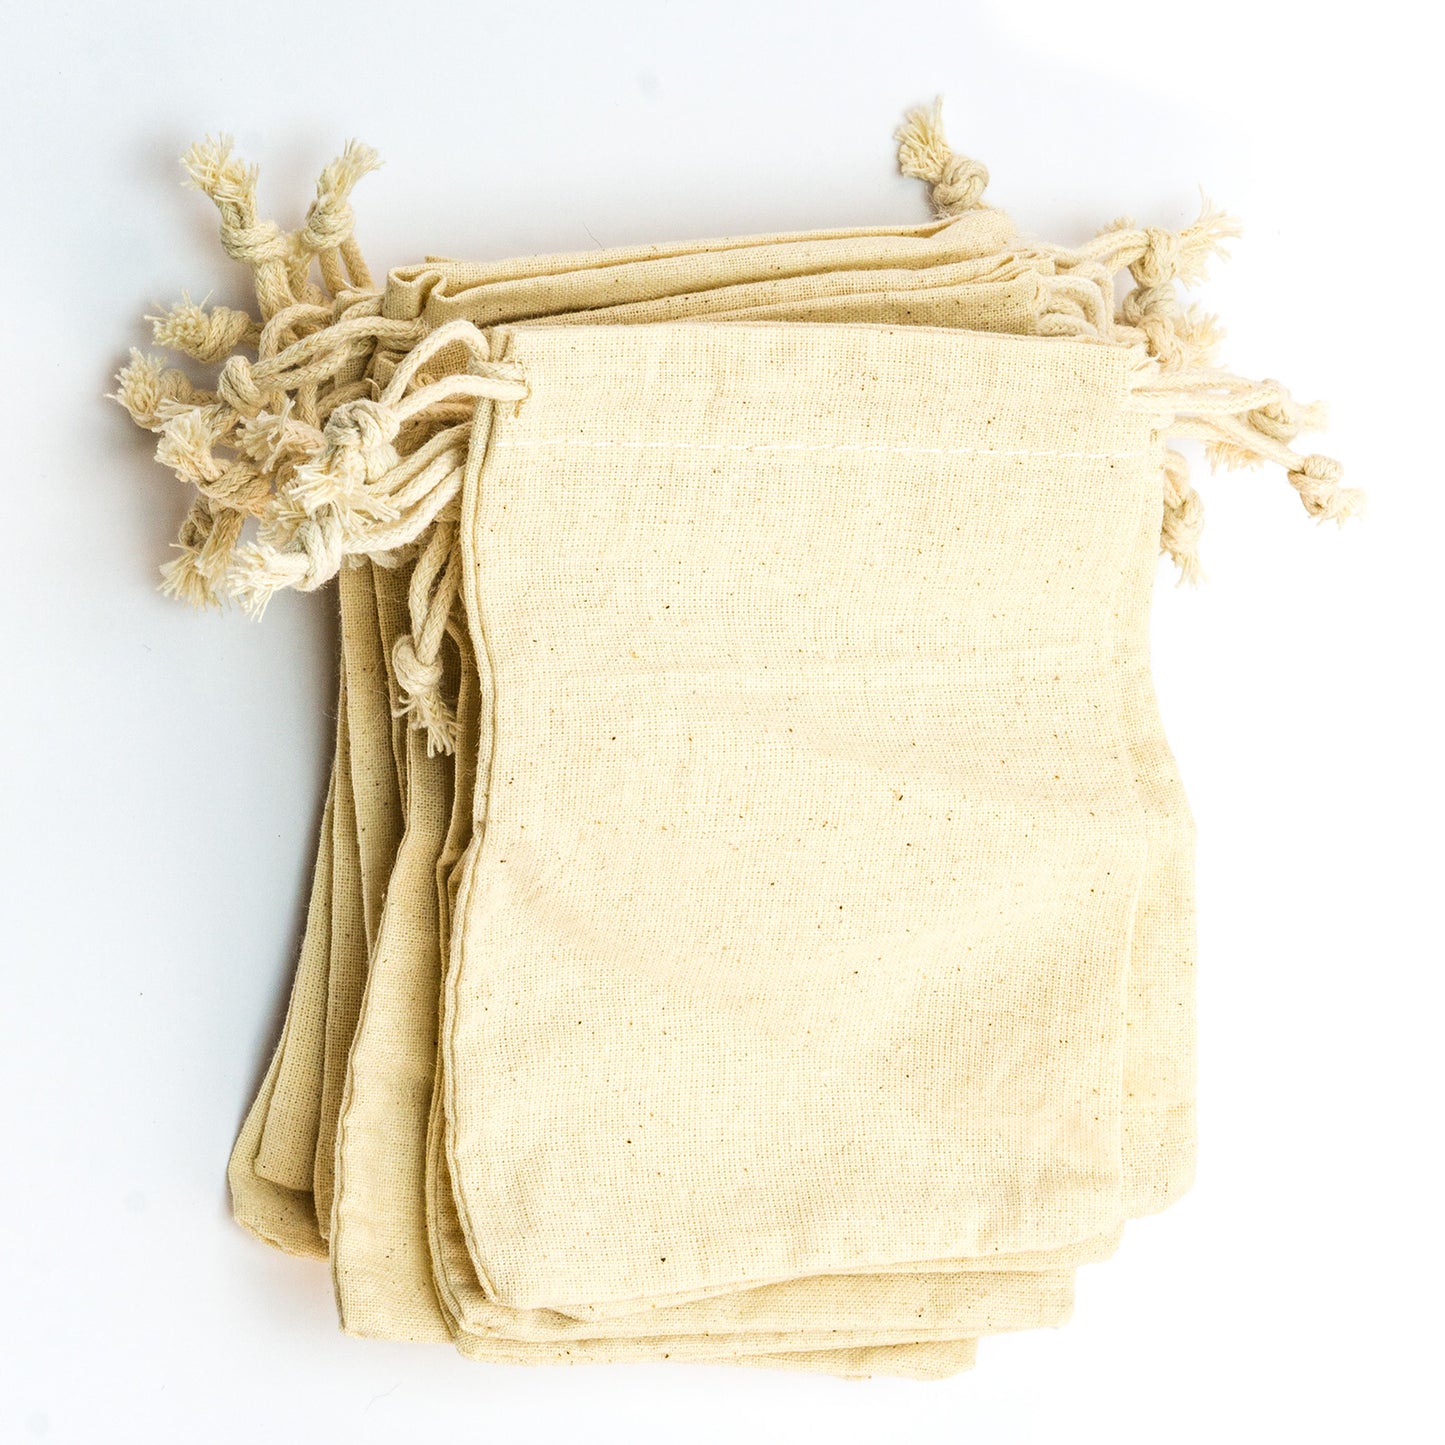 Cloth bag (14 x 10 cm)